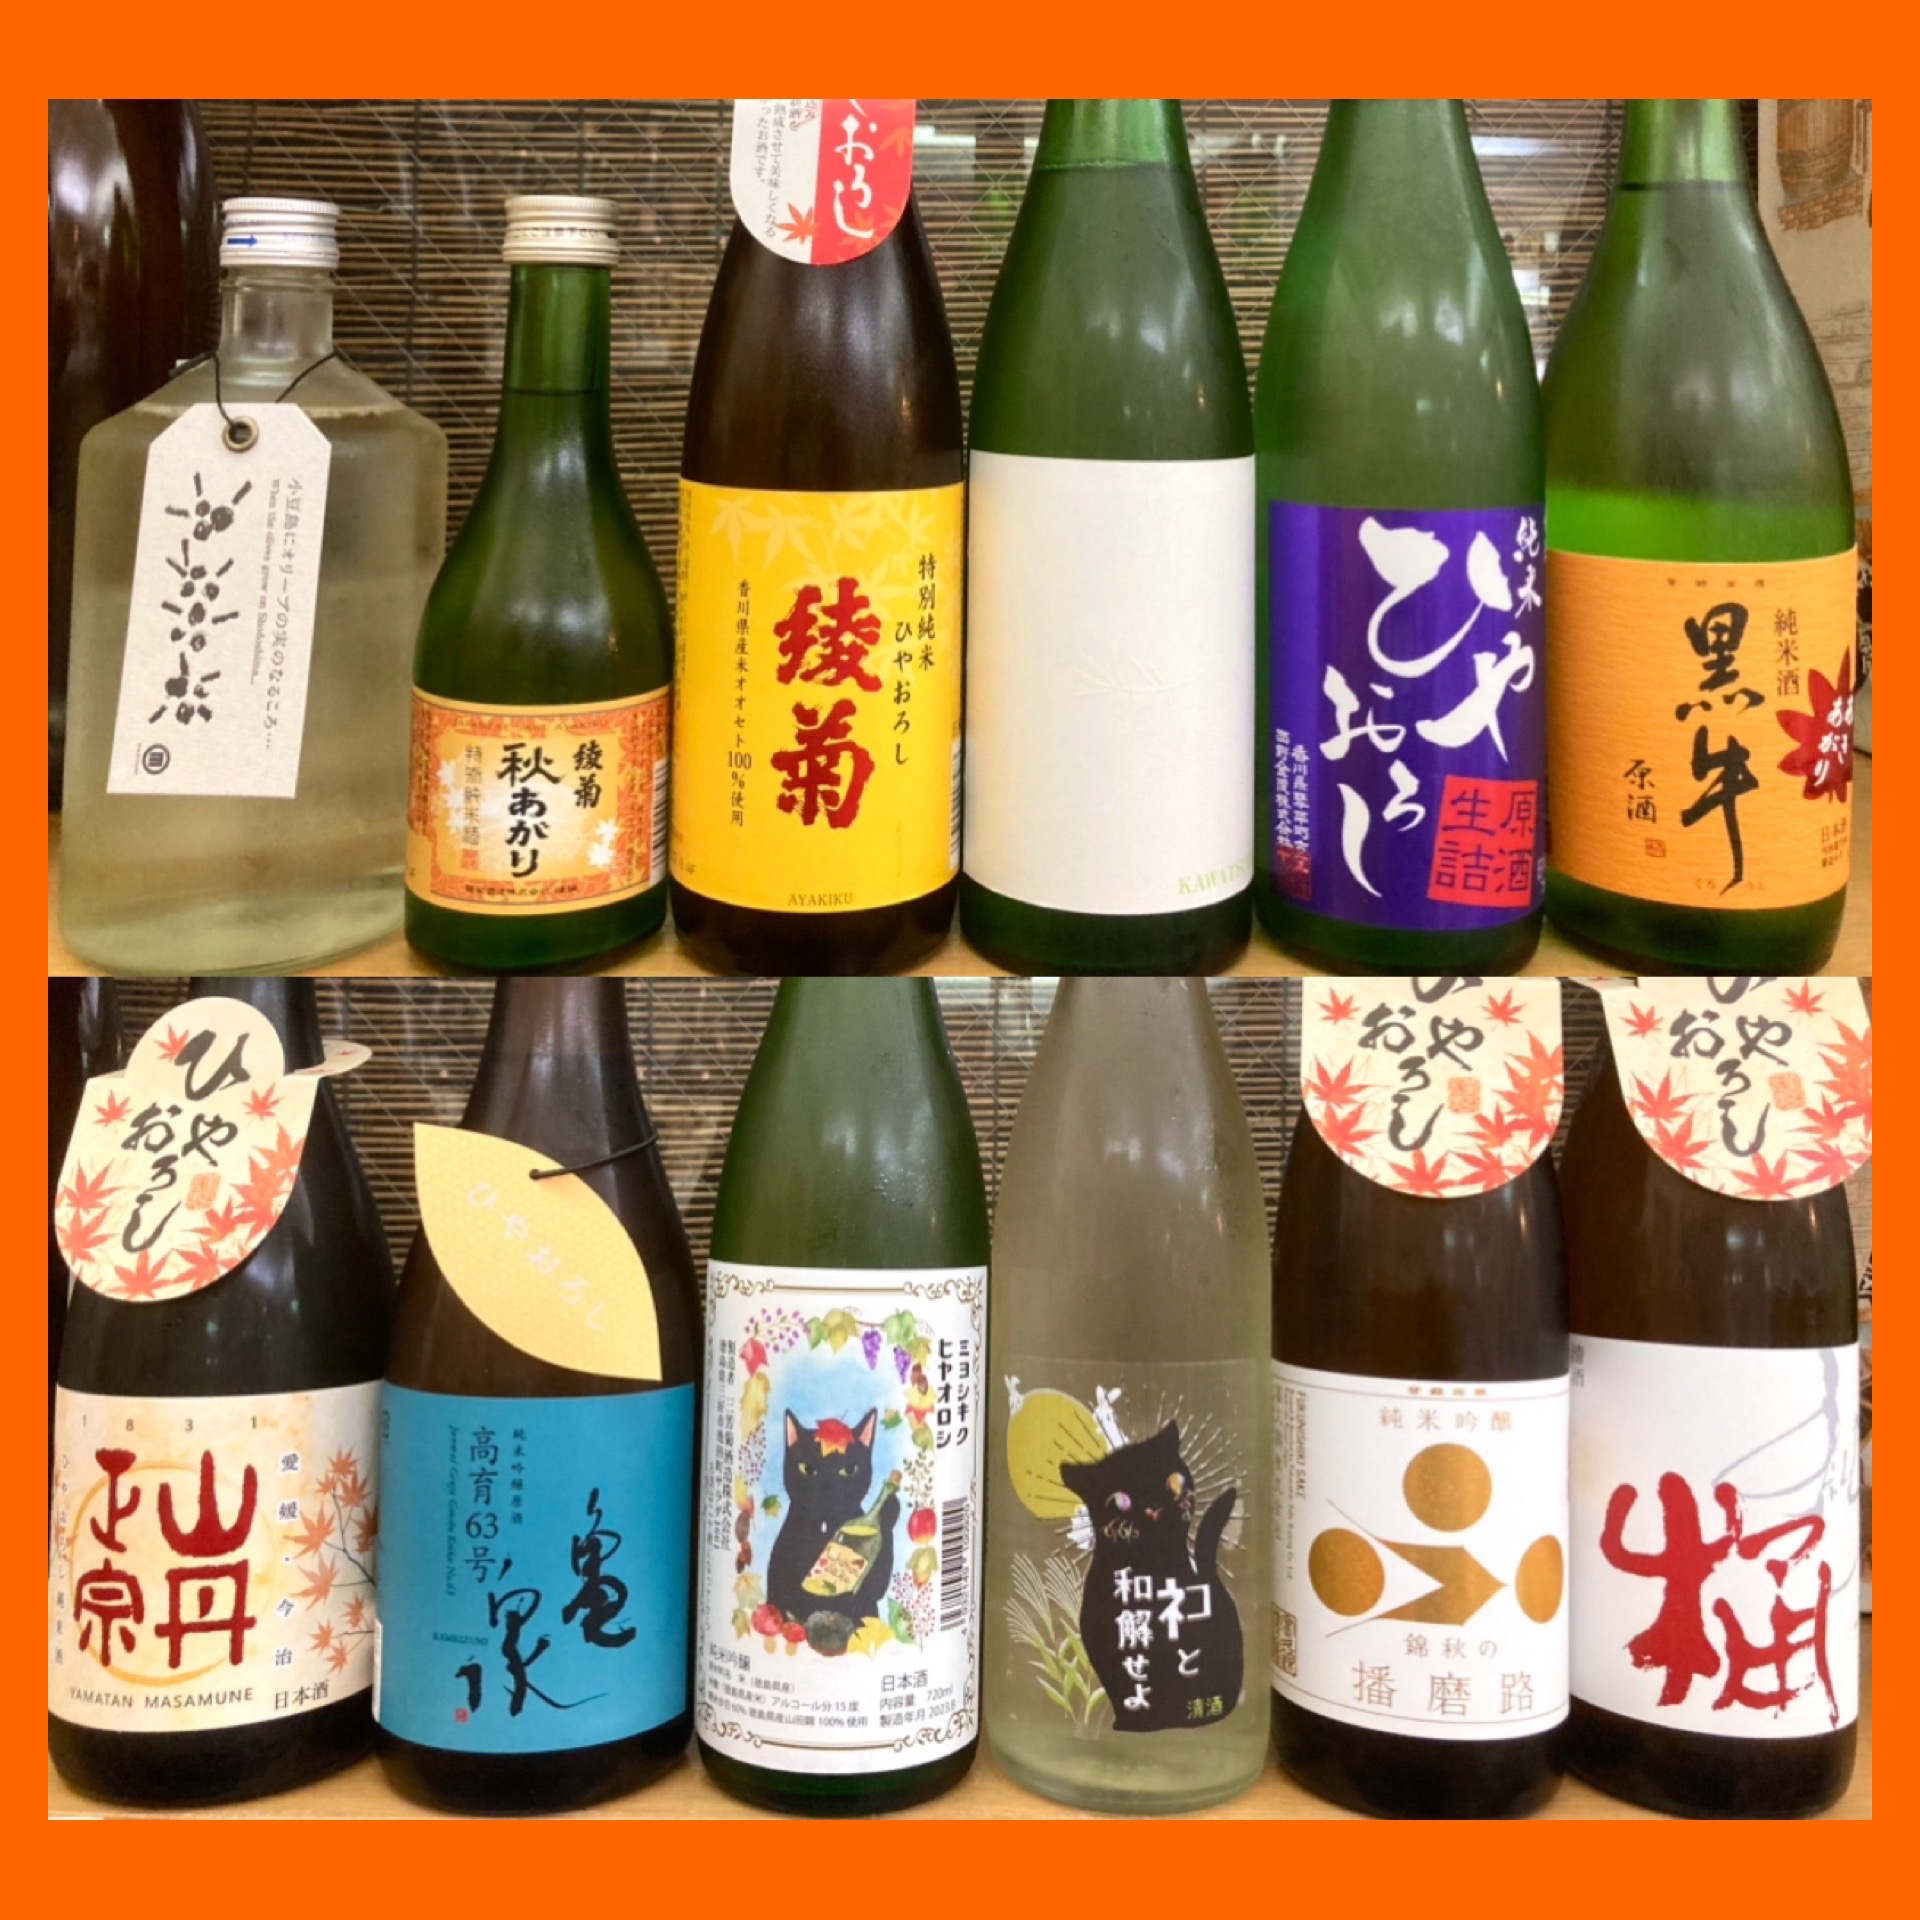 月見酒にもピッタリな日本酒「ひやおろし」もド〜ン！っと勢揃い(o^^o)